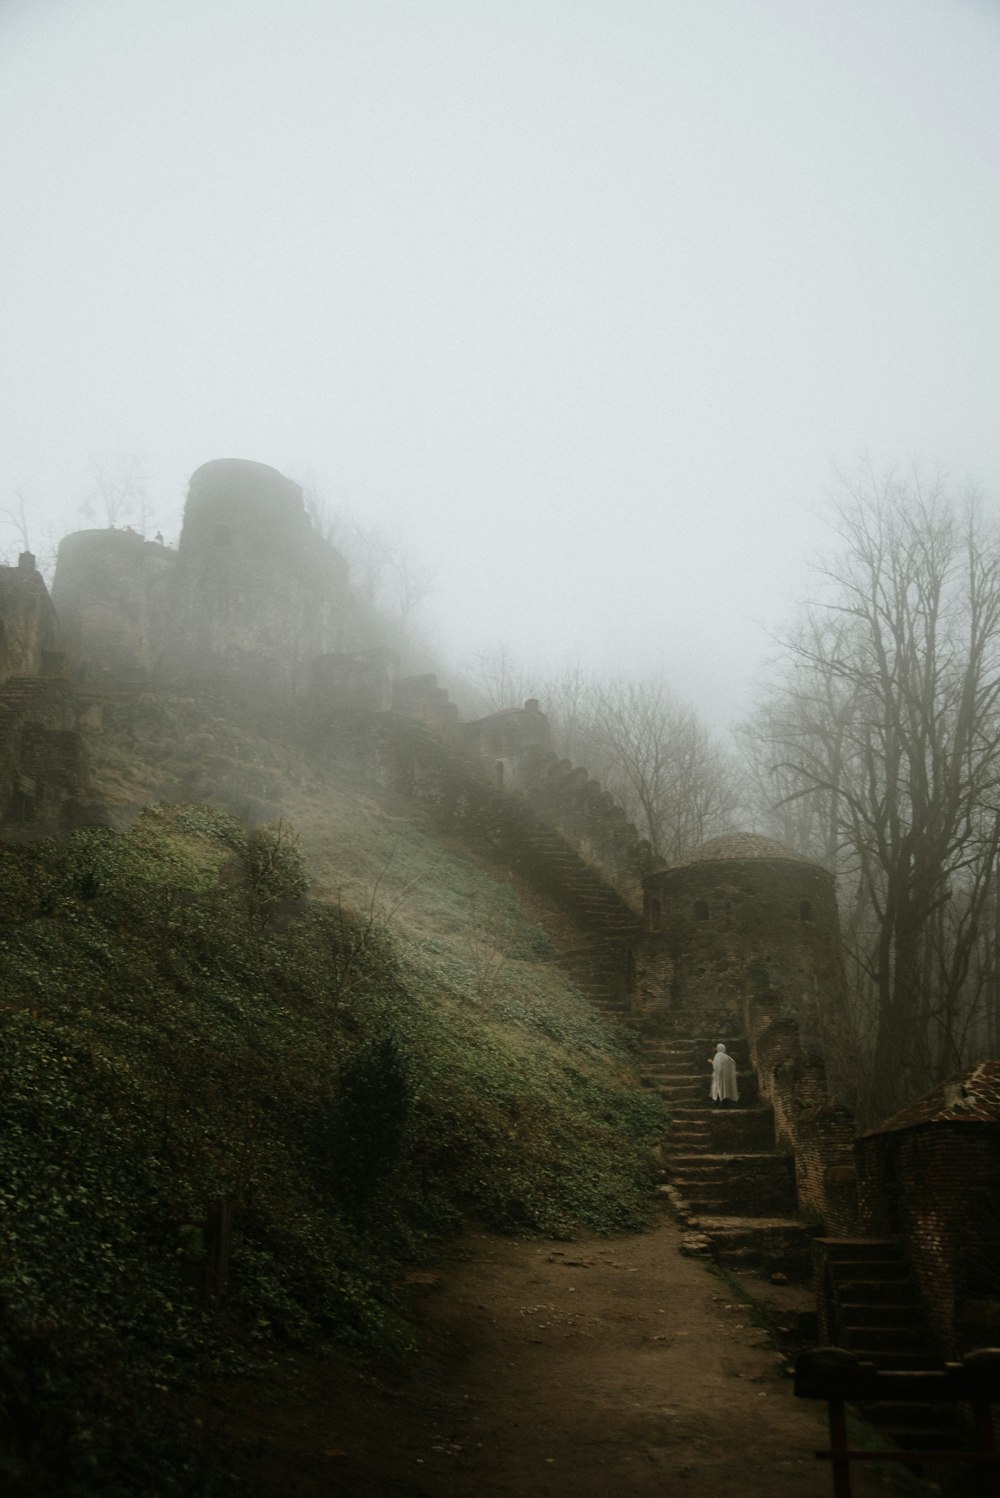 Una persona subiendo una colina en un día de niebla